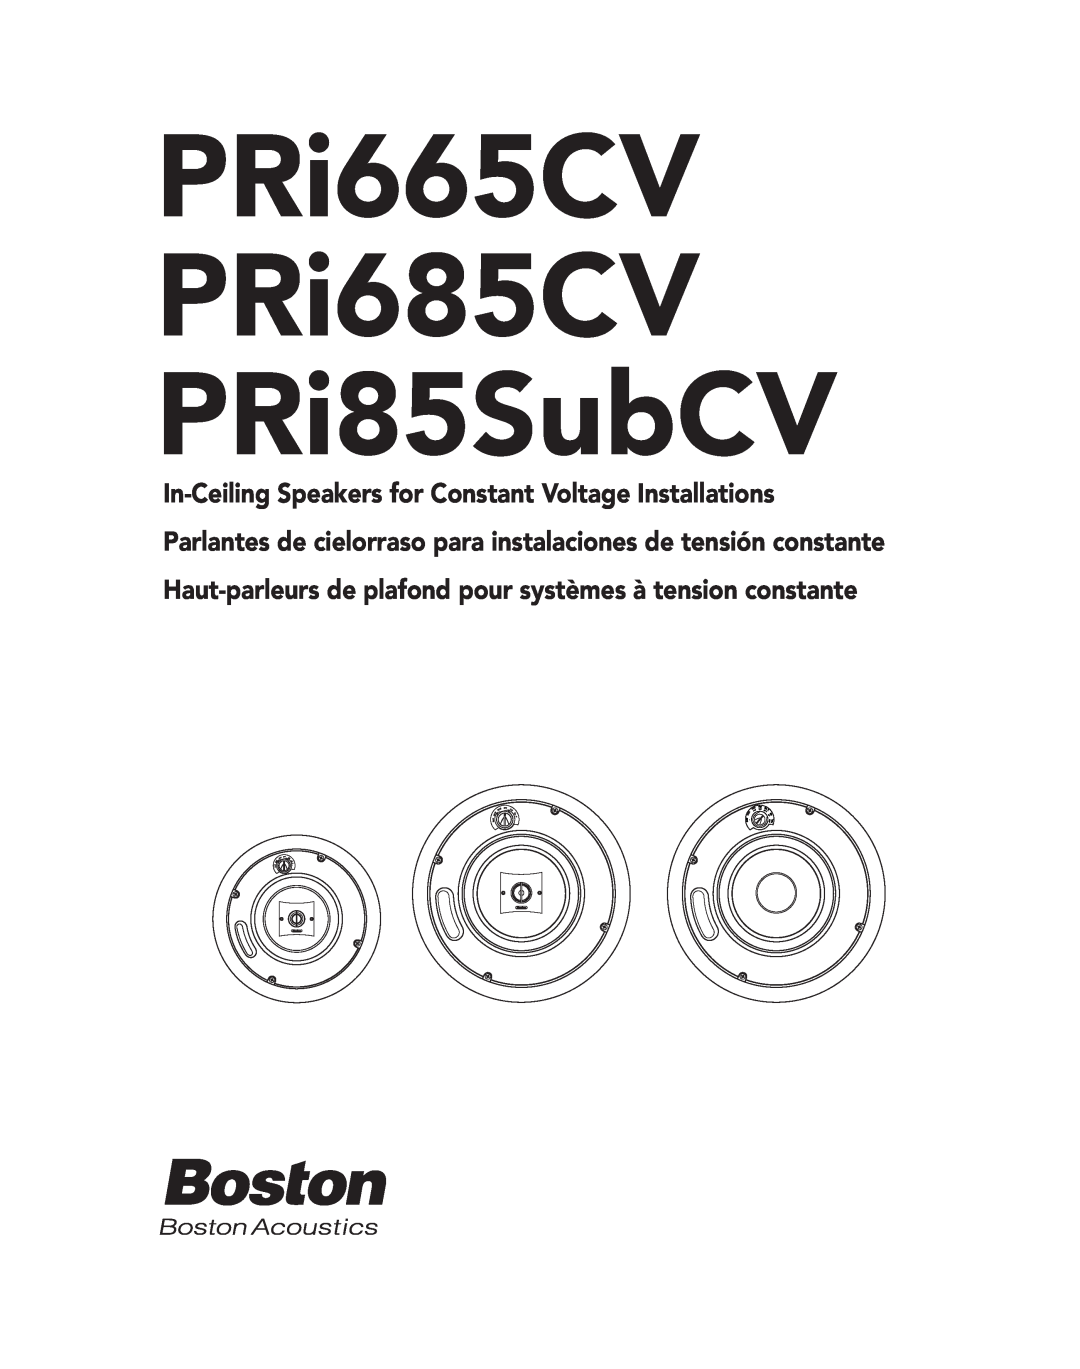 Boston Acoustics PRI685CV, PRI85SUBCV, PRI665CV owner manual PRi665CV PRi685CV PRi85SubCV, 4W D i r, 8W W 4 